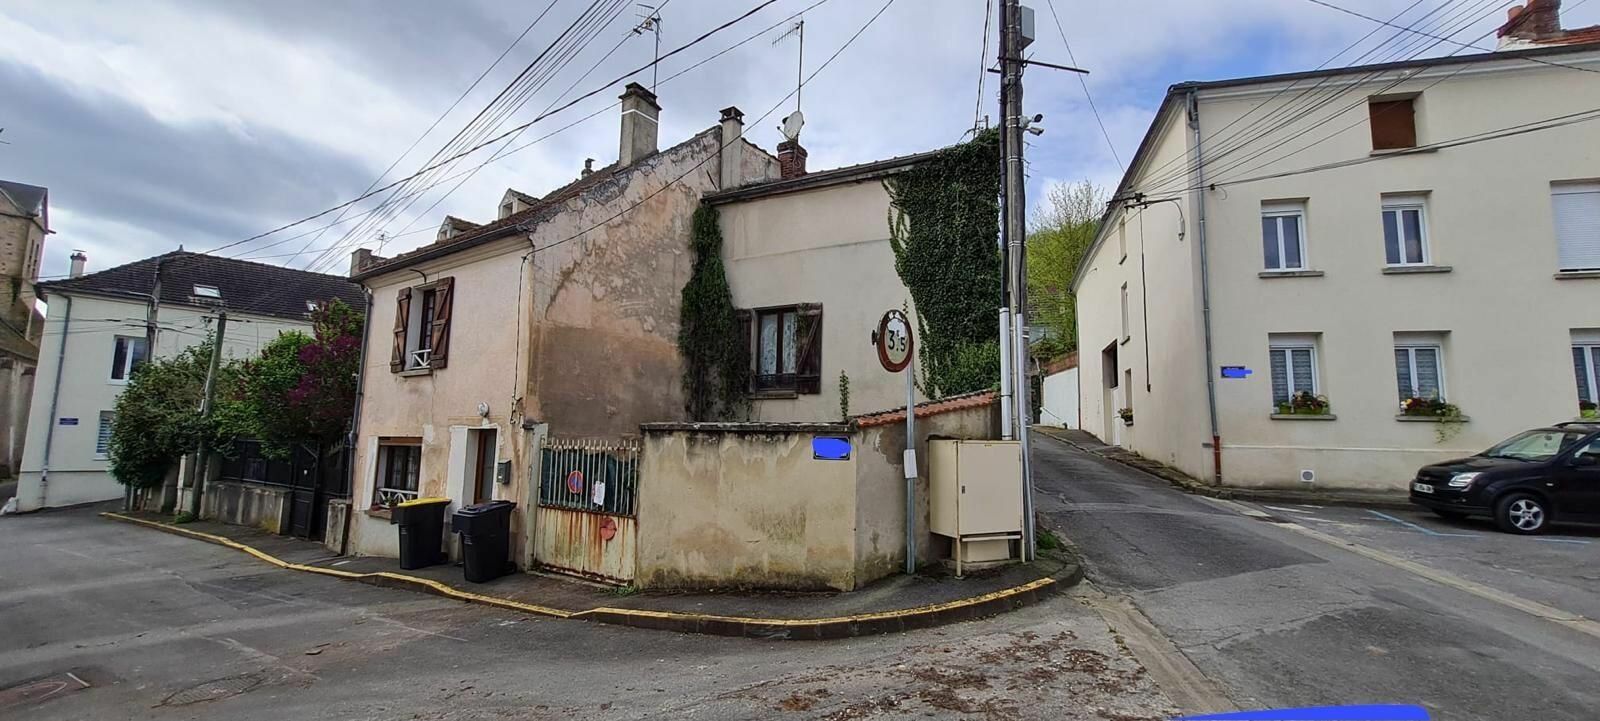 Maison à vendre 4 116m2 à Saâcy-sur-Marne vignette-3